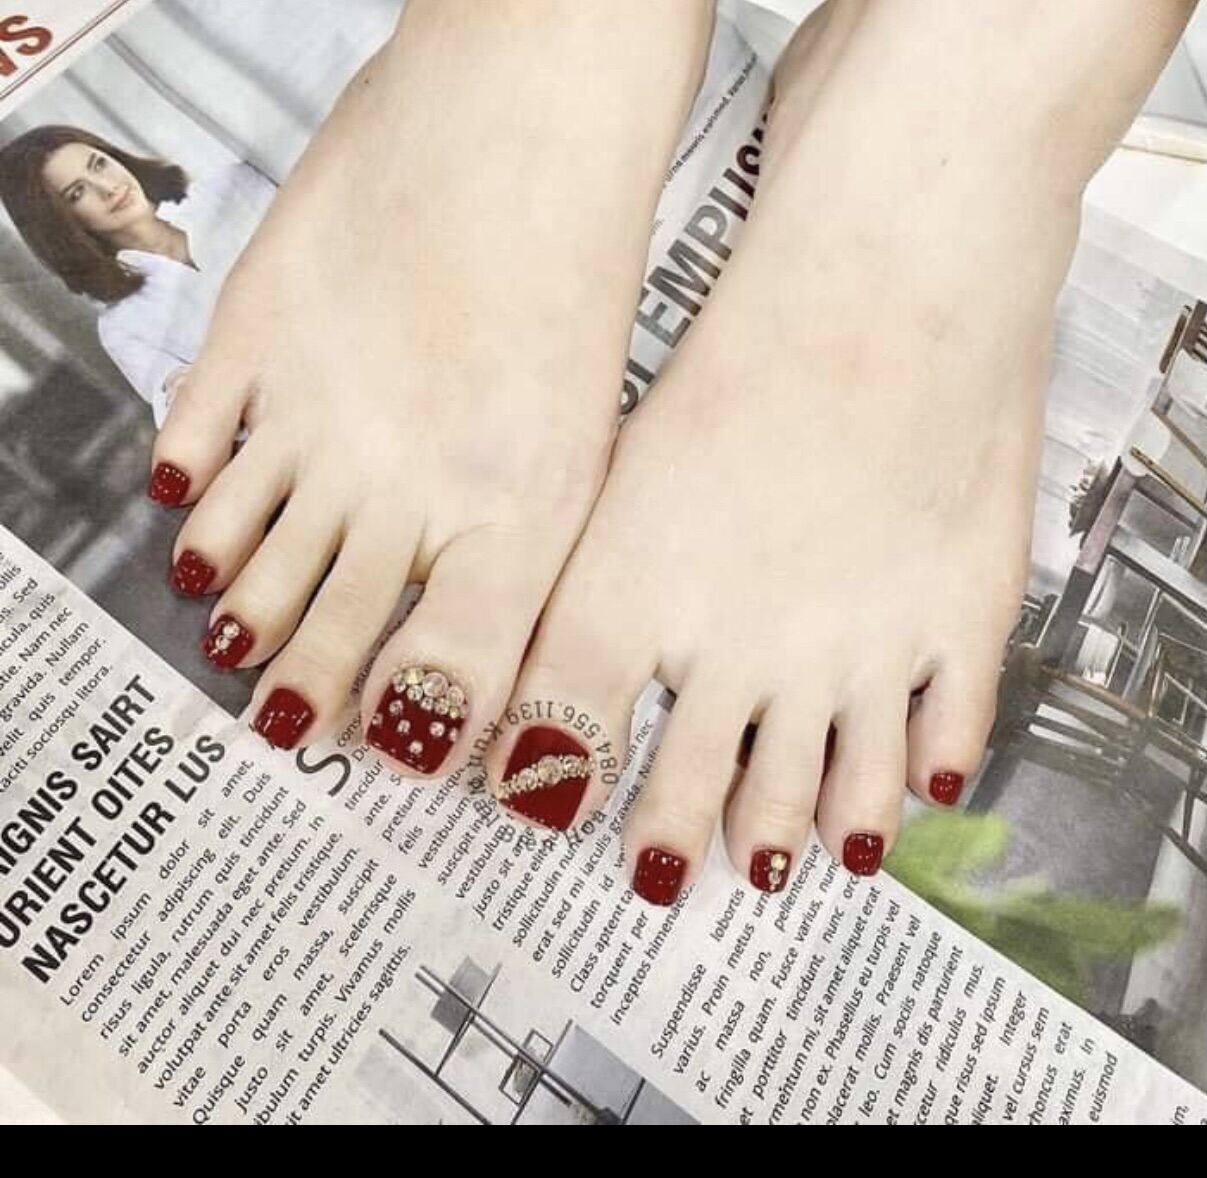 Vẽ móng chân màu đỏ mận đỏ rượu đẹp mới tìm hiểu 91 nail chân đẹp màu đỏ  mới nhất